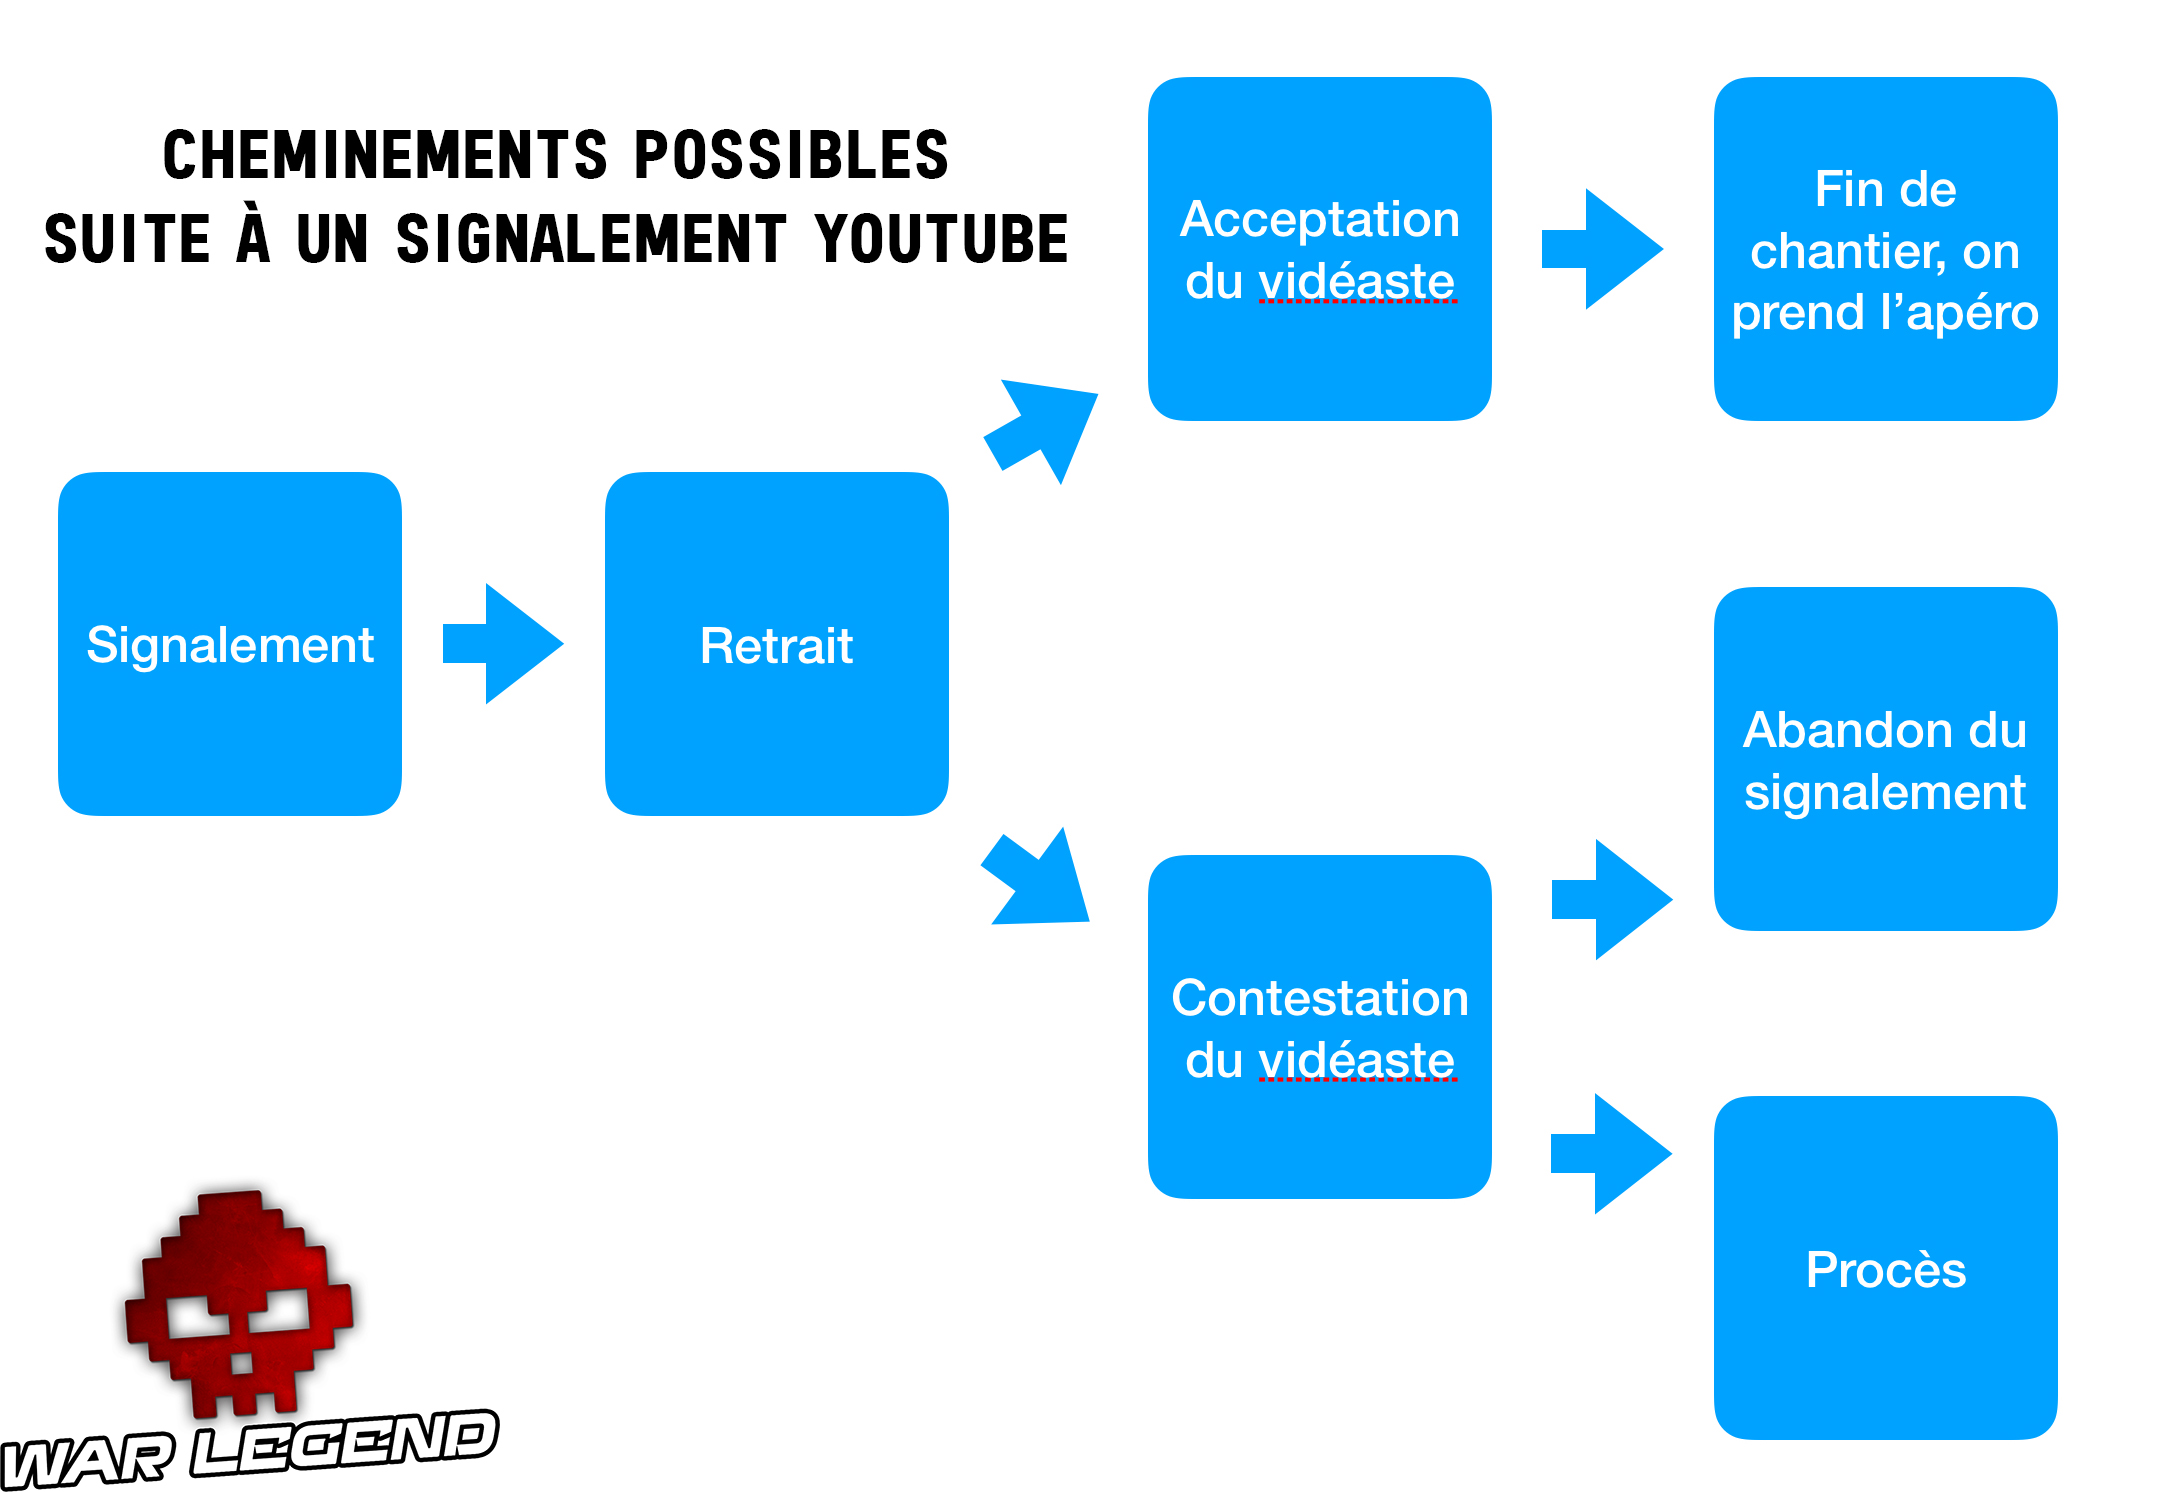 schéma représentant les différentes voies possibles suite à un signalement YouTube